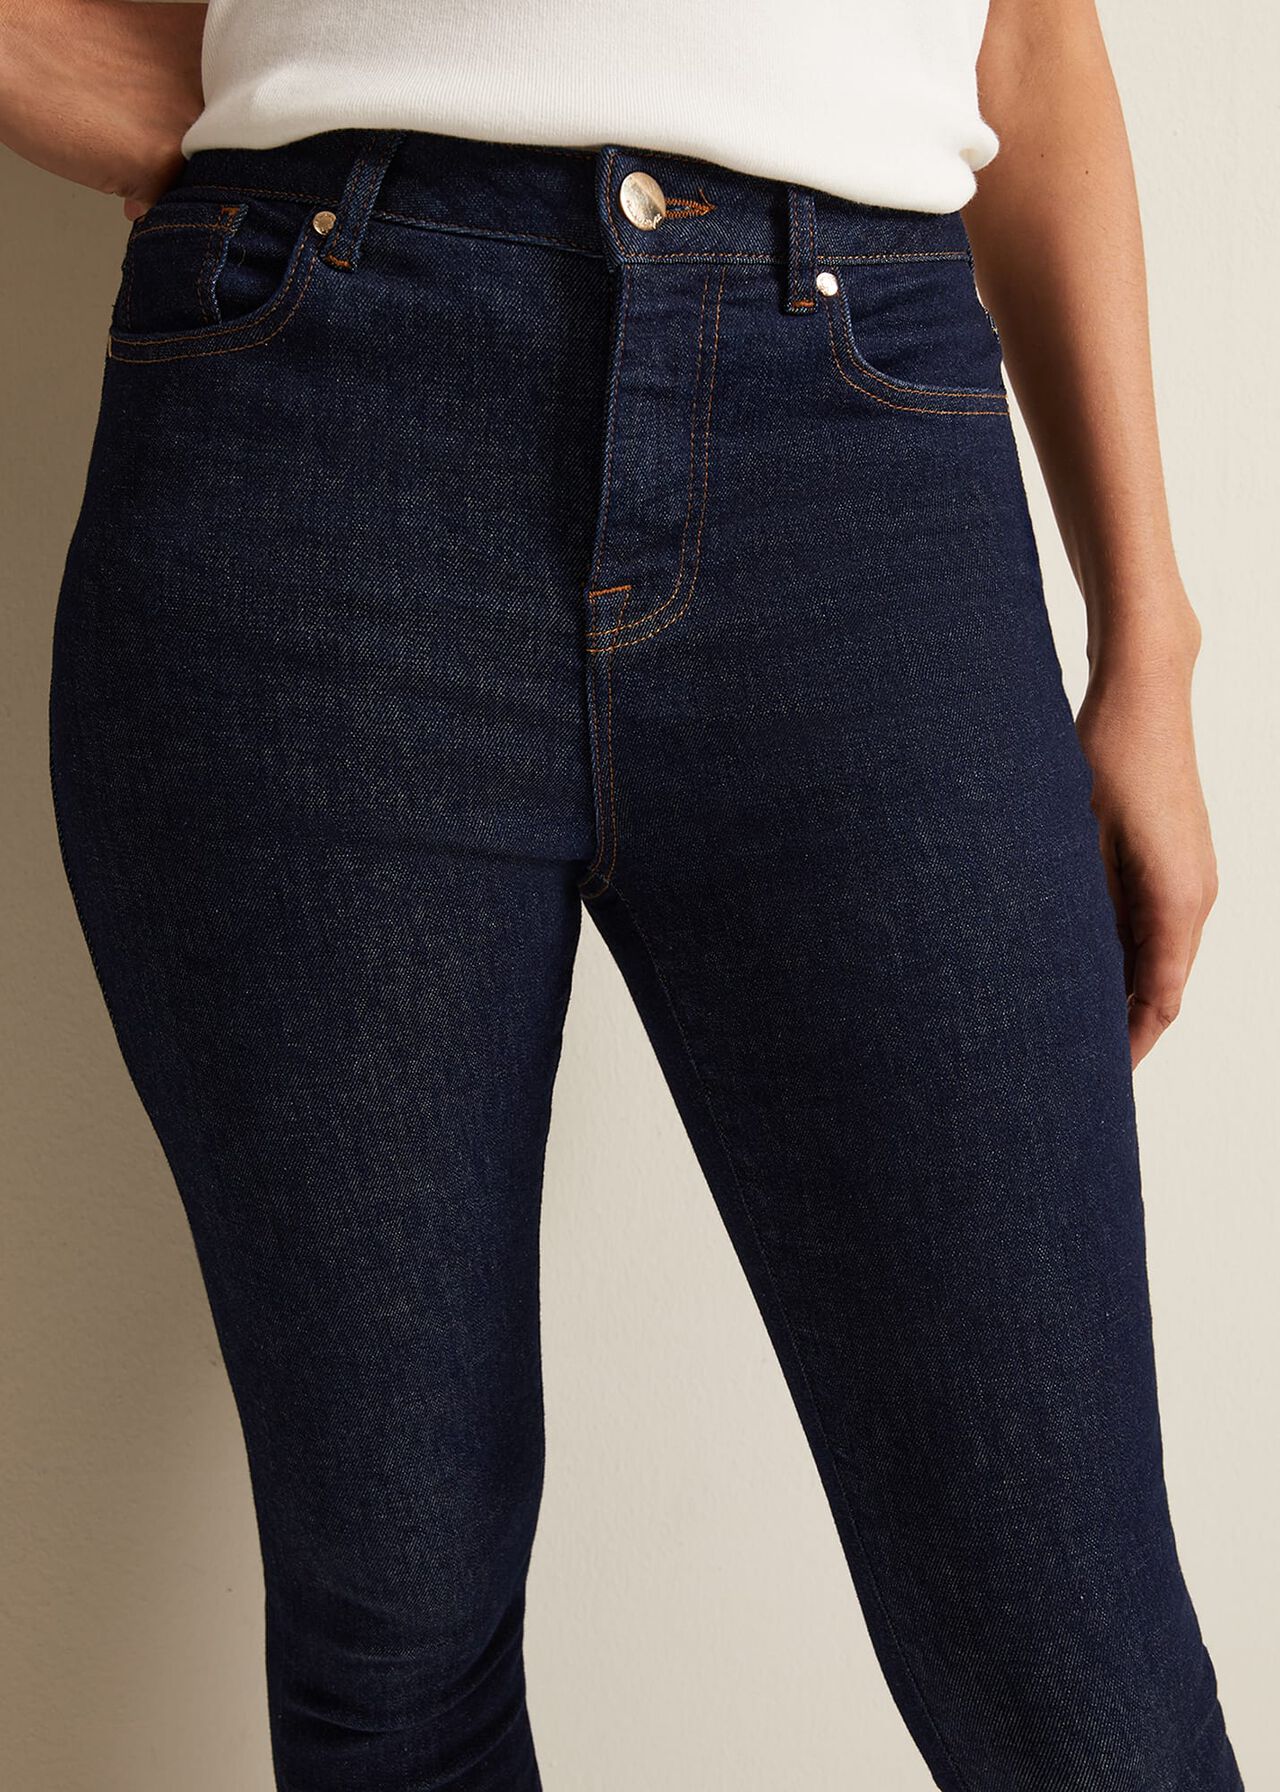 Jelena Super Comfort Skinny Jeans